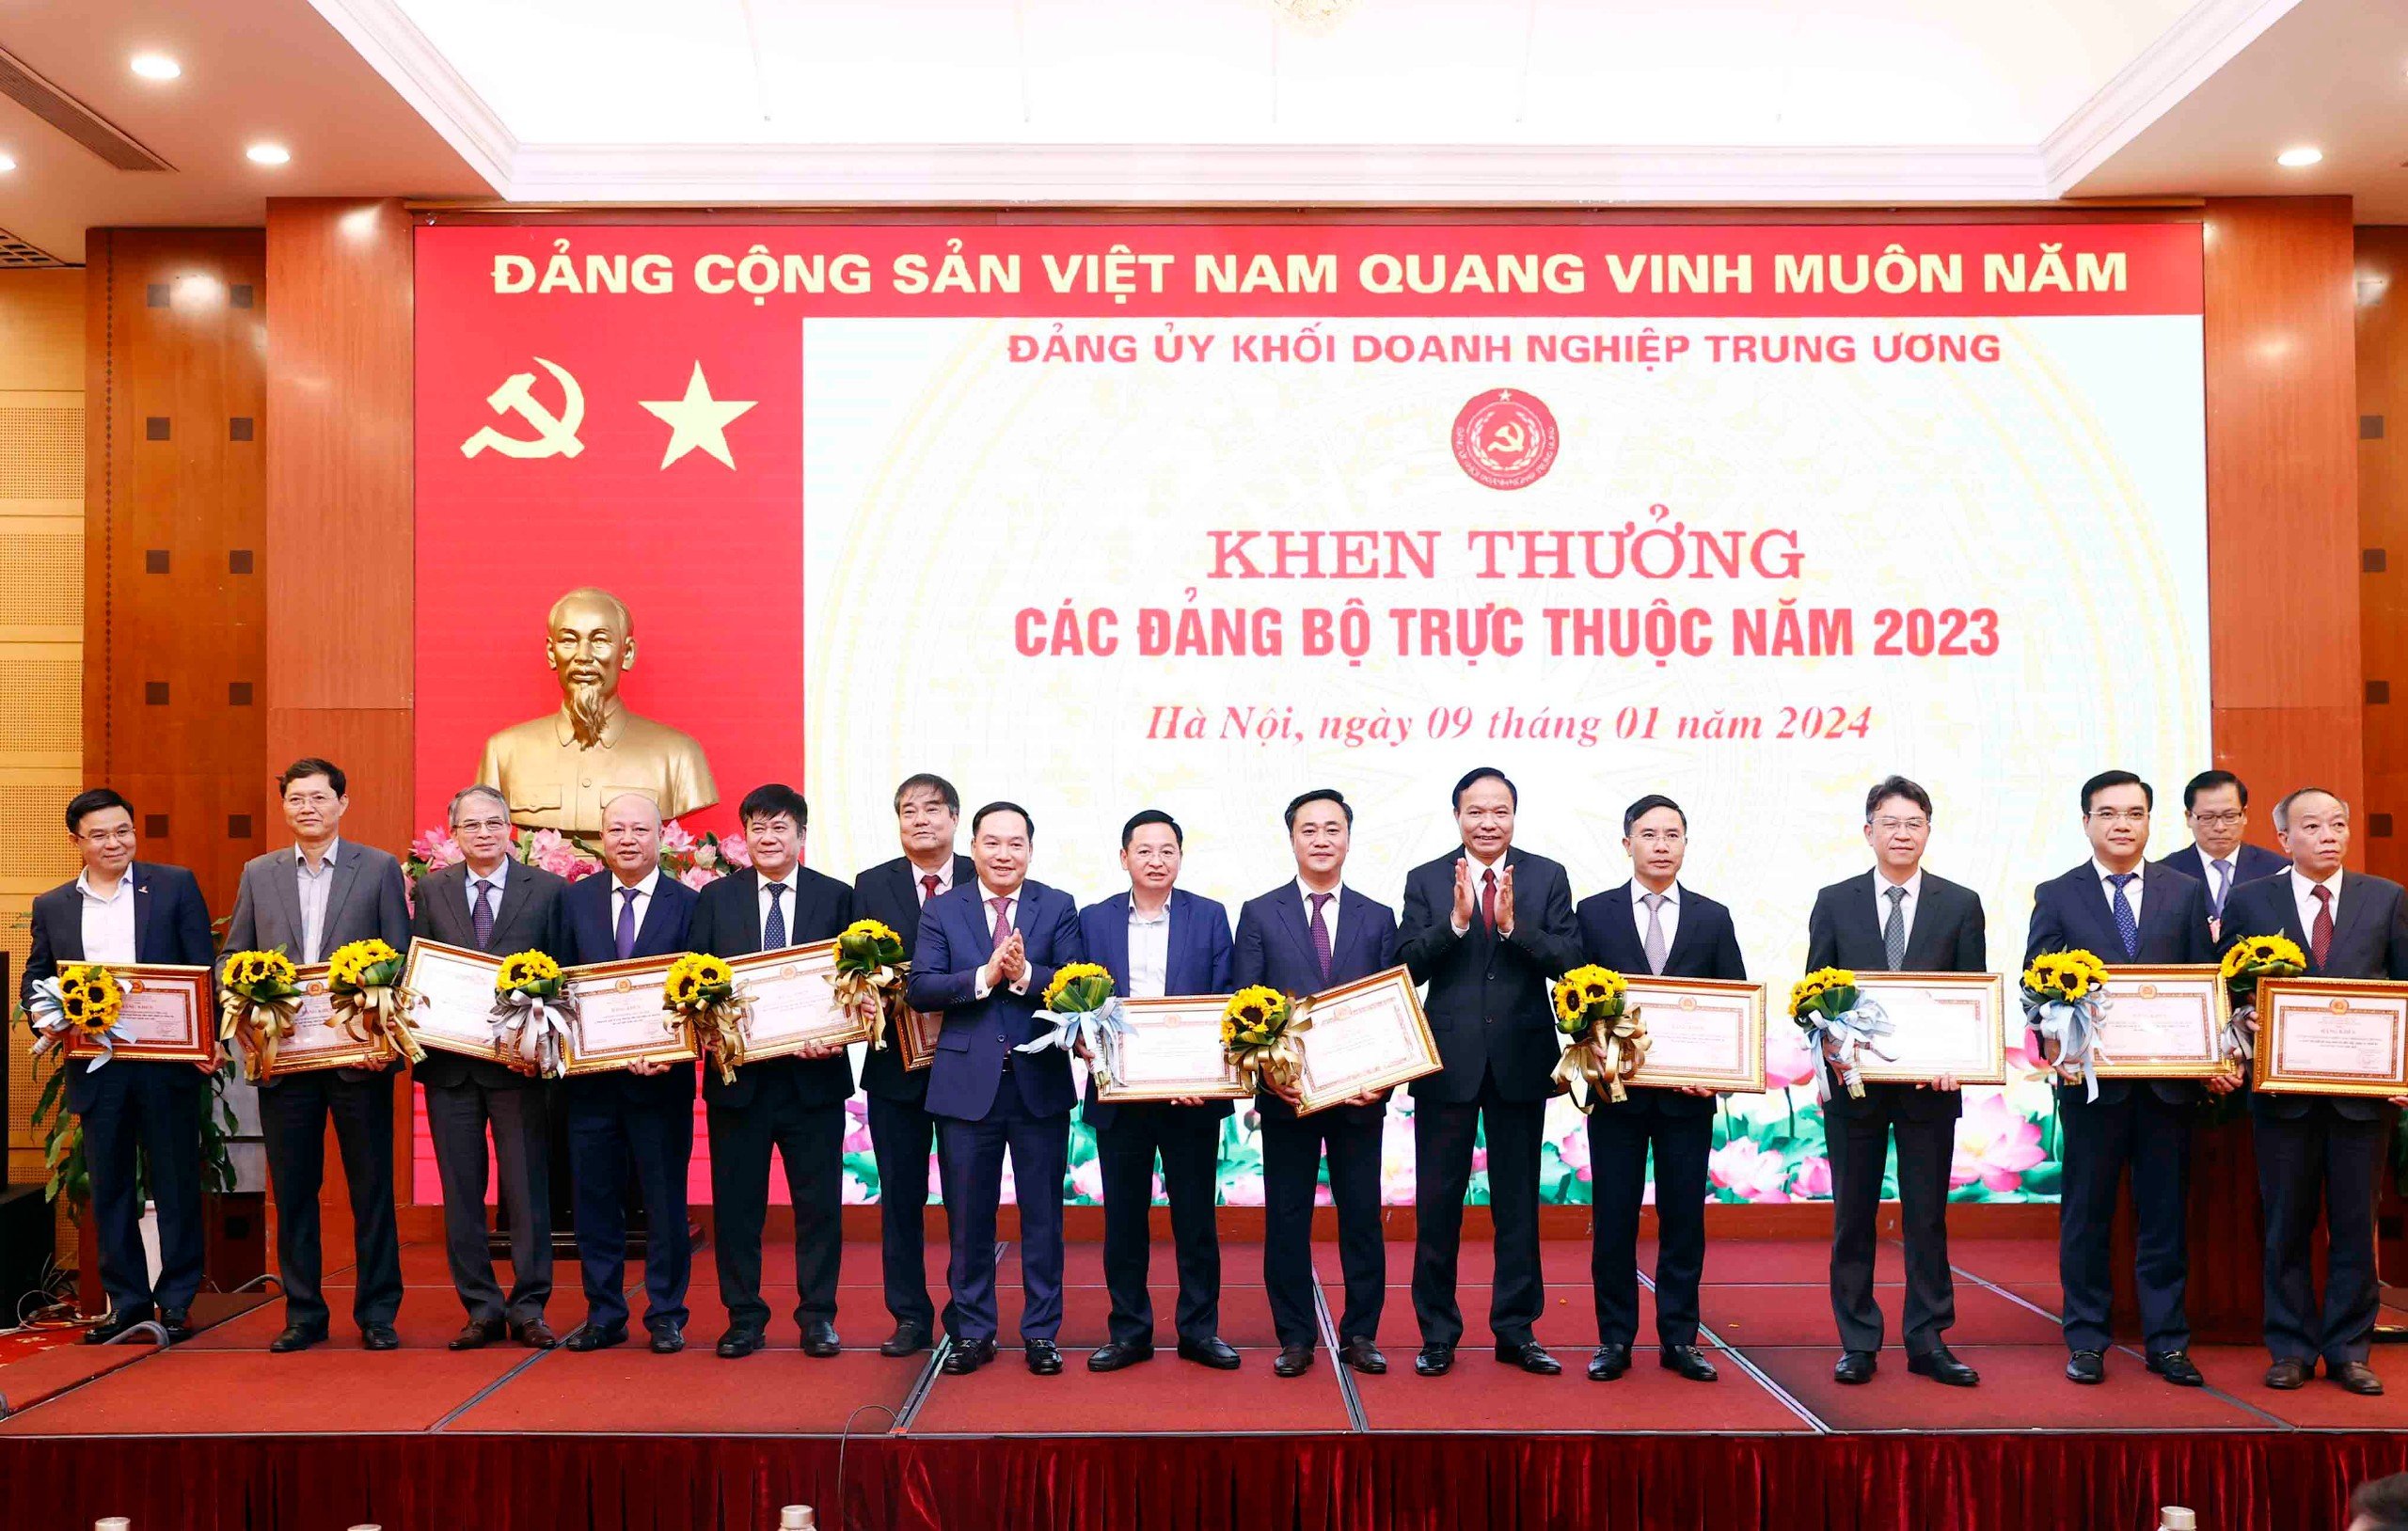 Đảng uỷ Khối Doanh nghiệp Trung ương tặng Bằng khen cho 12 đảng bộ trực thuộc đã có thành tích xuất sắc trong lãnh đạo thực hiện nhiệm vụ chính trị và sản xuất kinh doanh năm 2023.